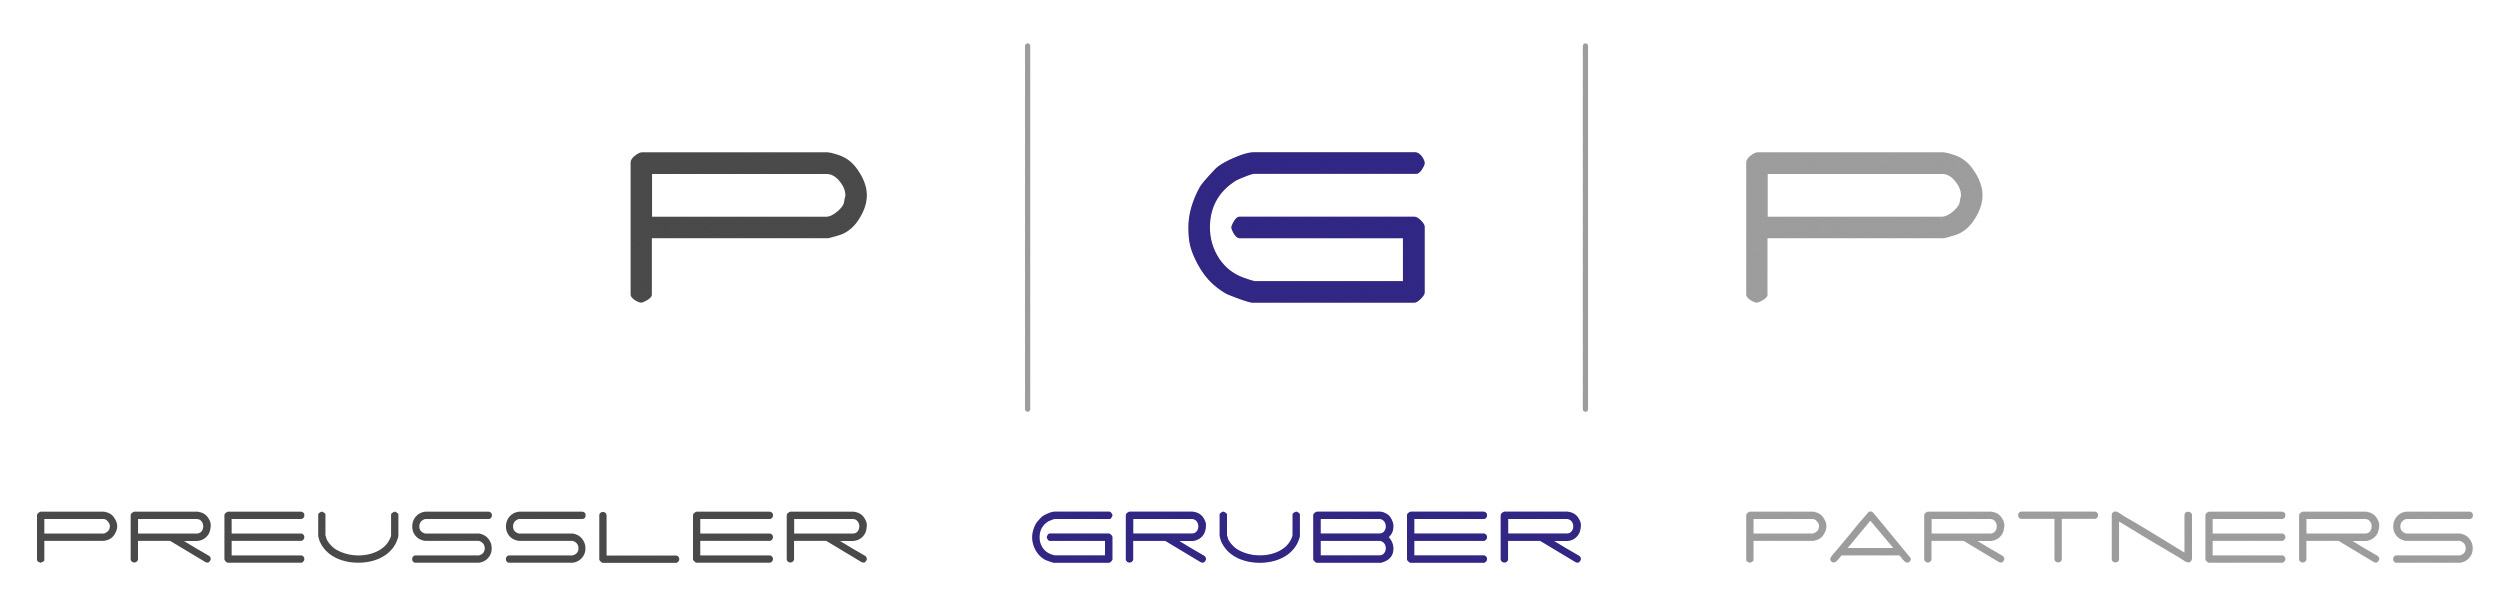 Kanzlei Preussler Gruber Partners